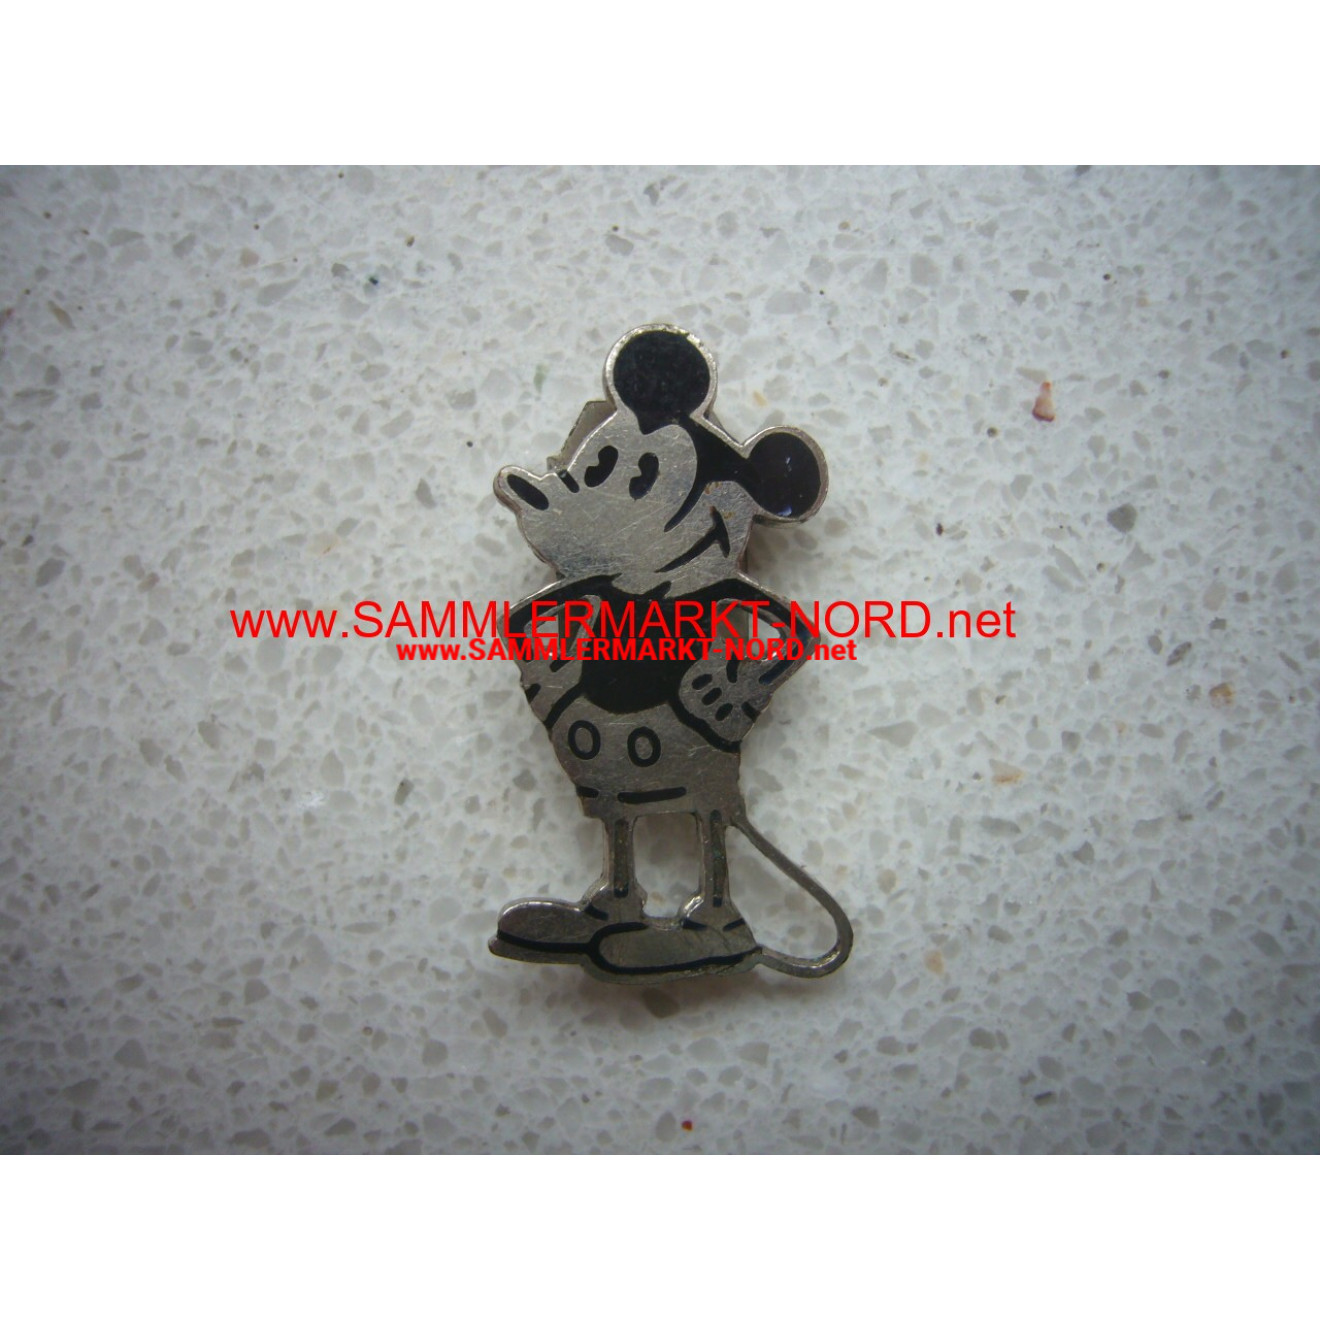 Spanischer Bürgerkrieg 1936-1939 - Staffelabzeichen Mickey Mouse